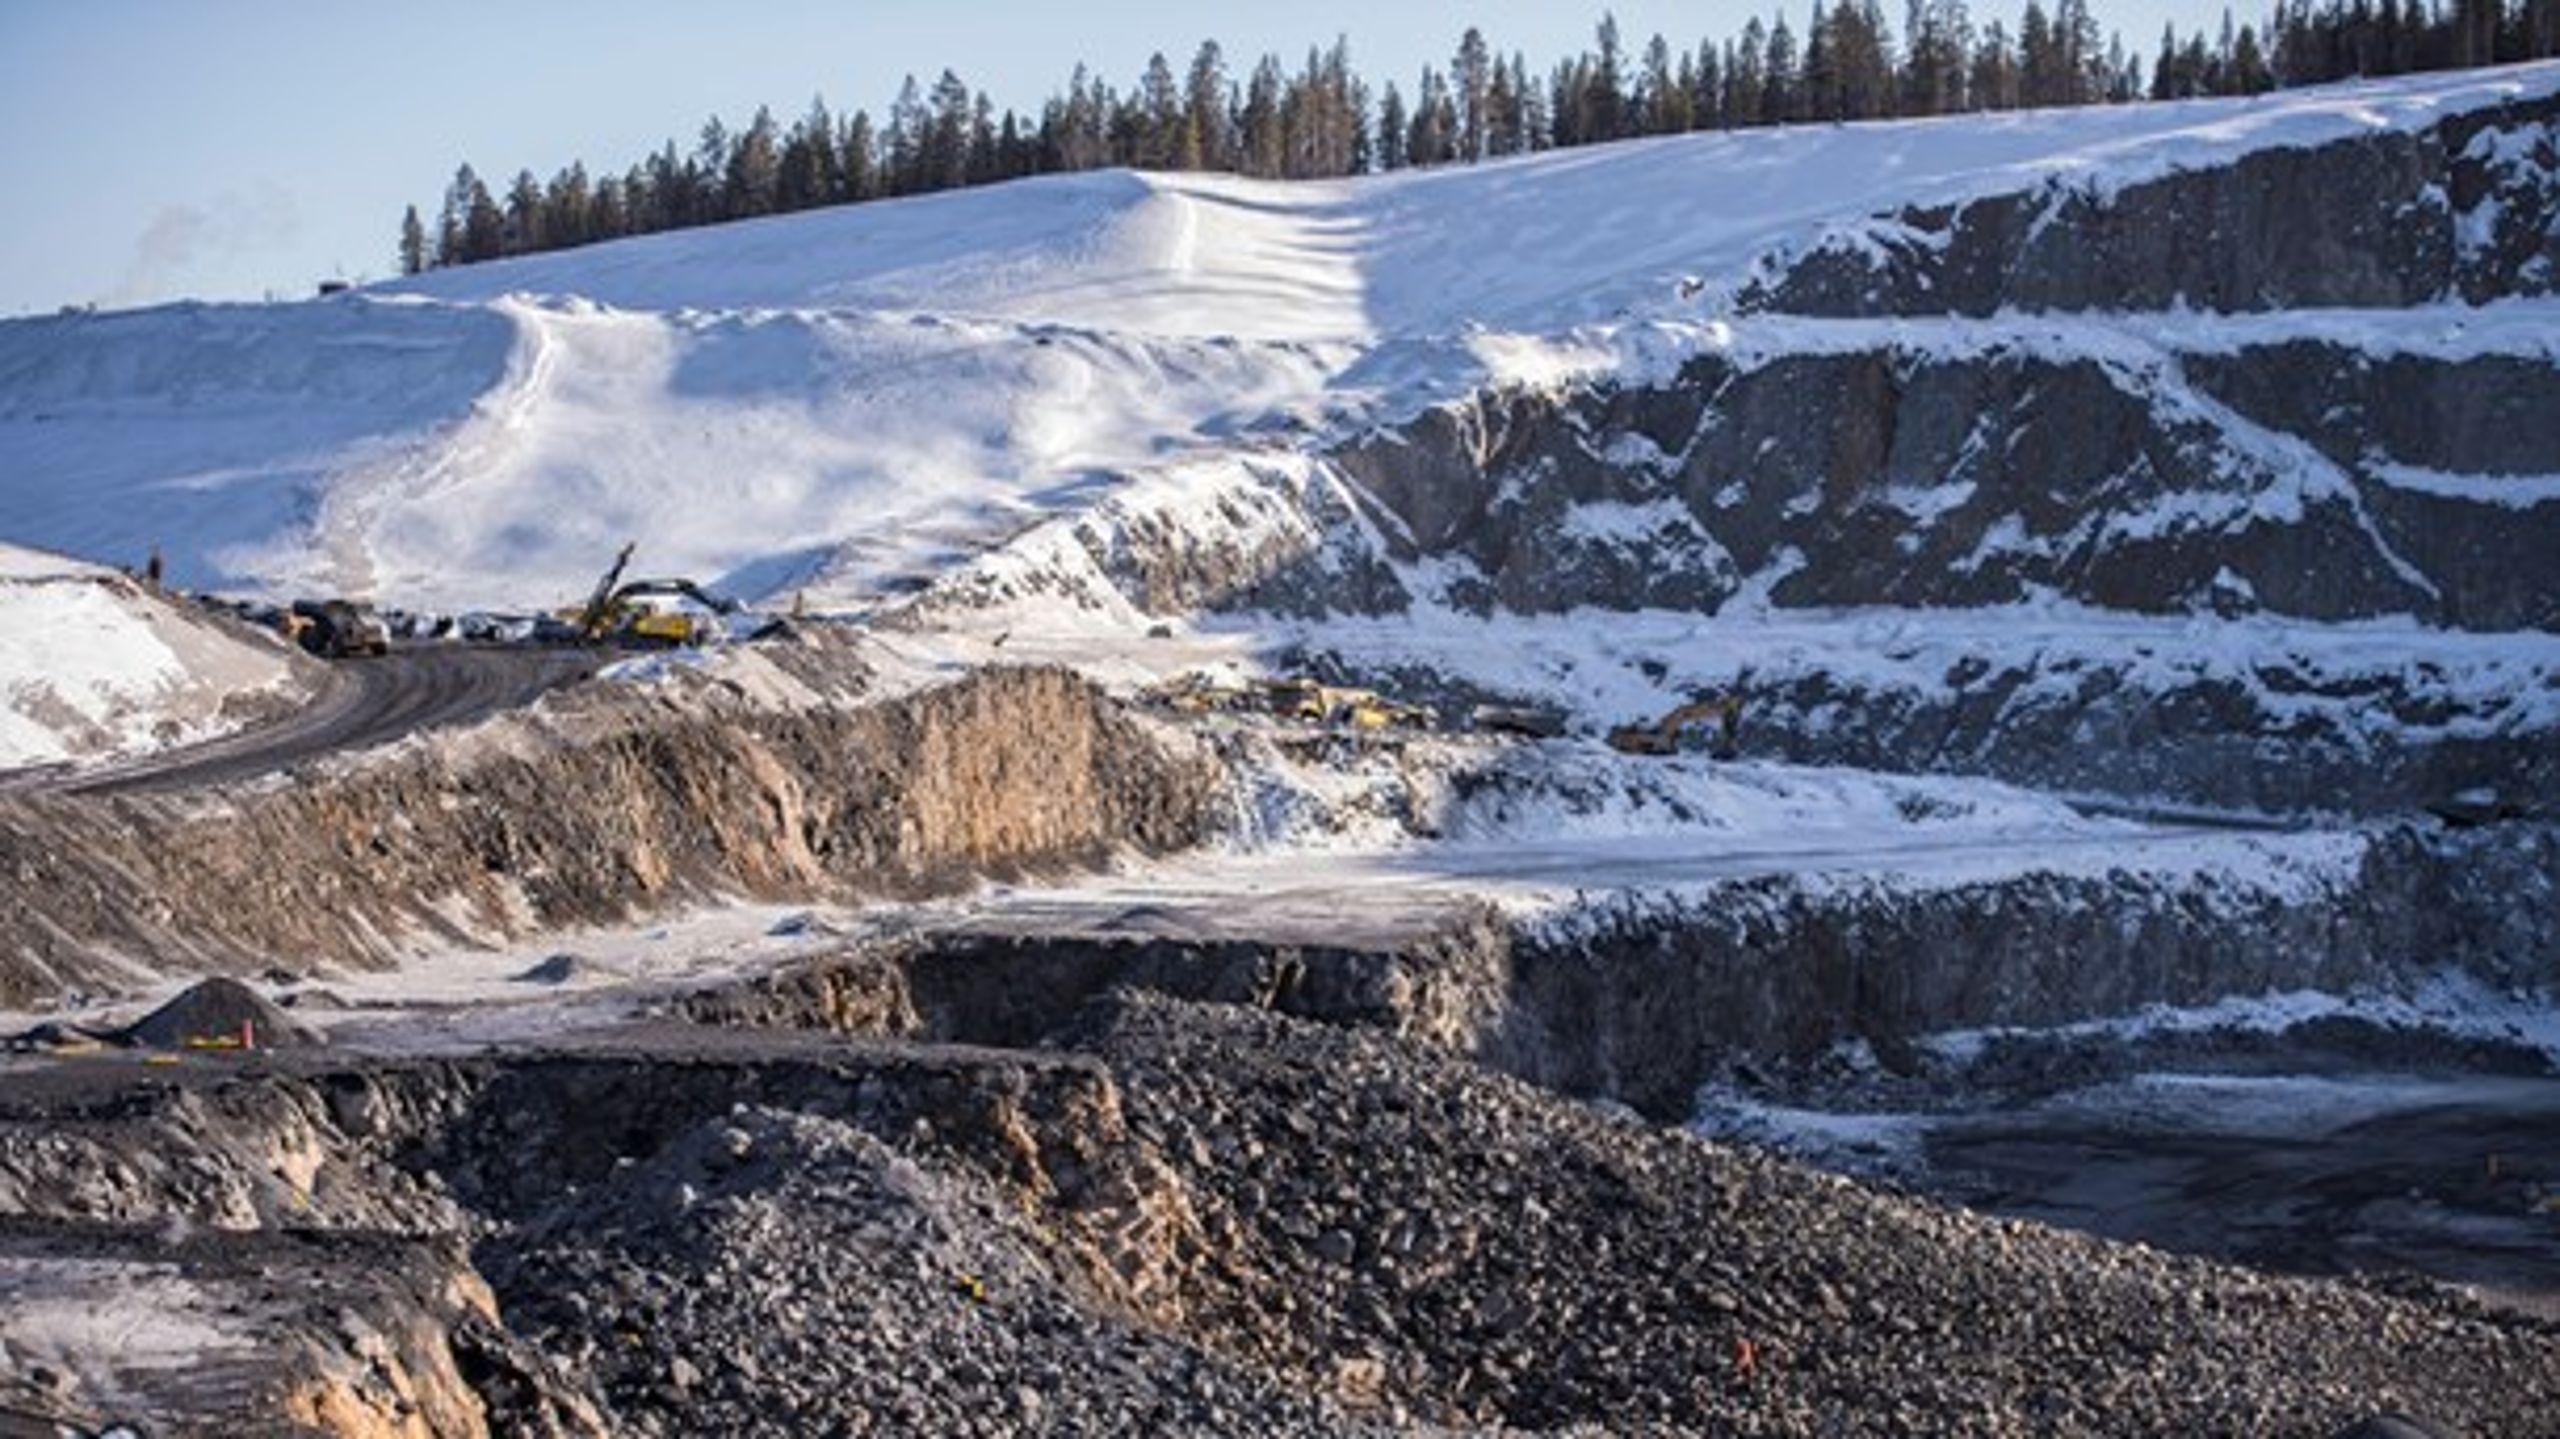 Även om dagens svenska miljölagar och regler är bland de hårdaste i världen för att bedriva gruvbrytning så är det ändå angeläget att branschen visar att det går att göra ännu mer, skriver debattören.